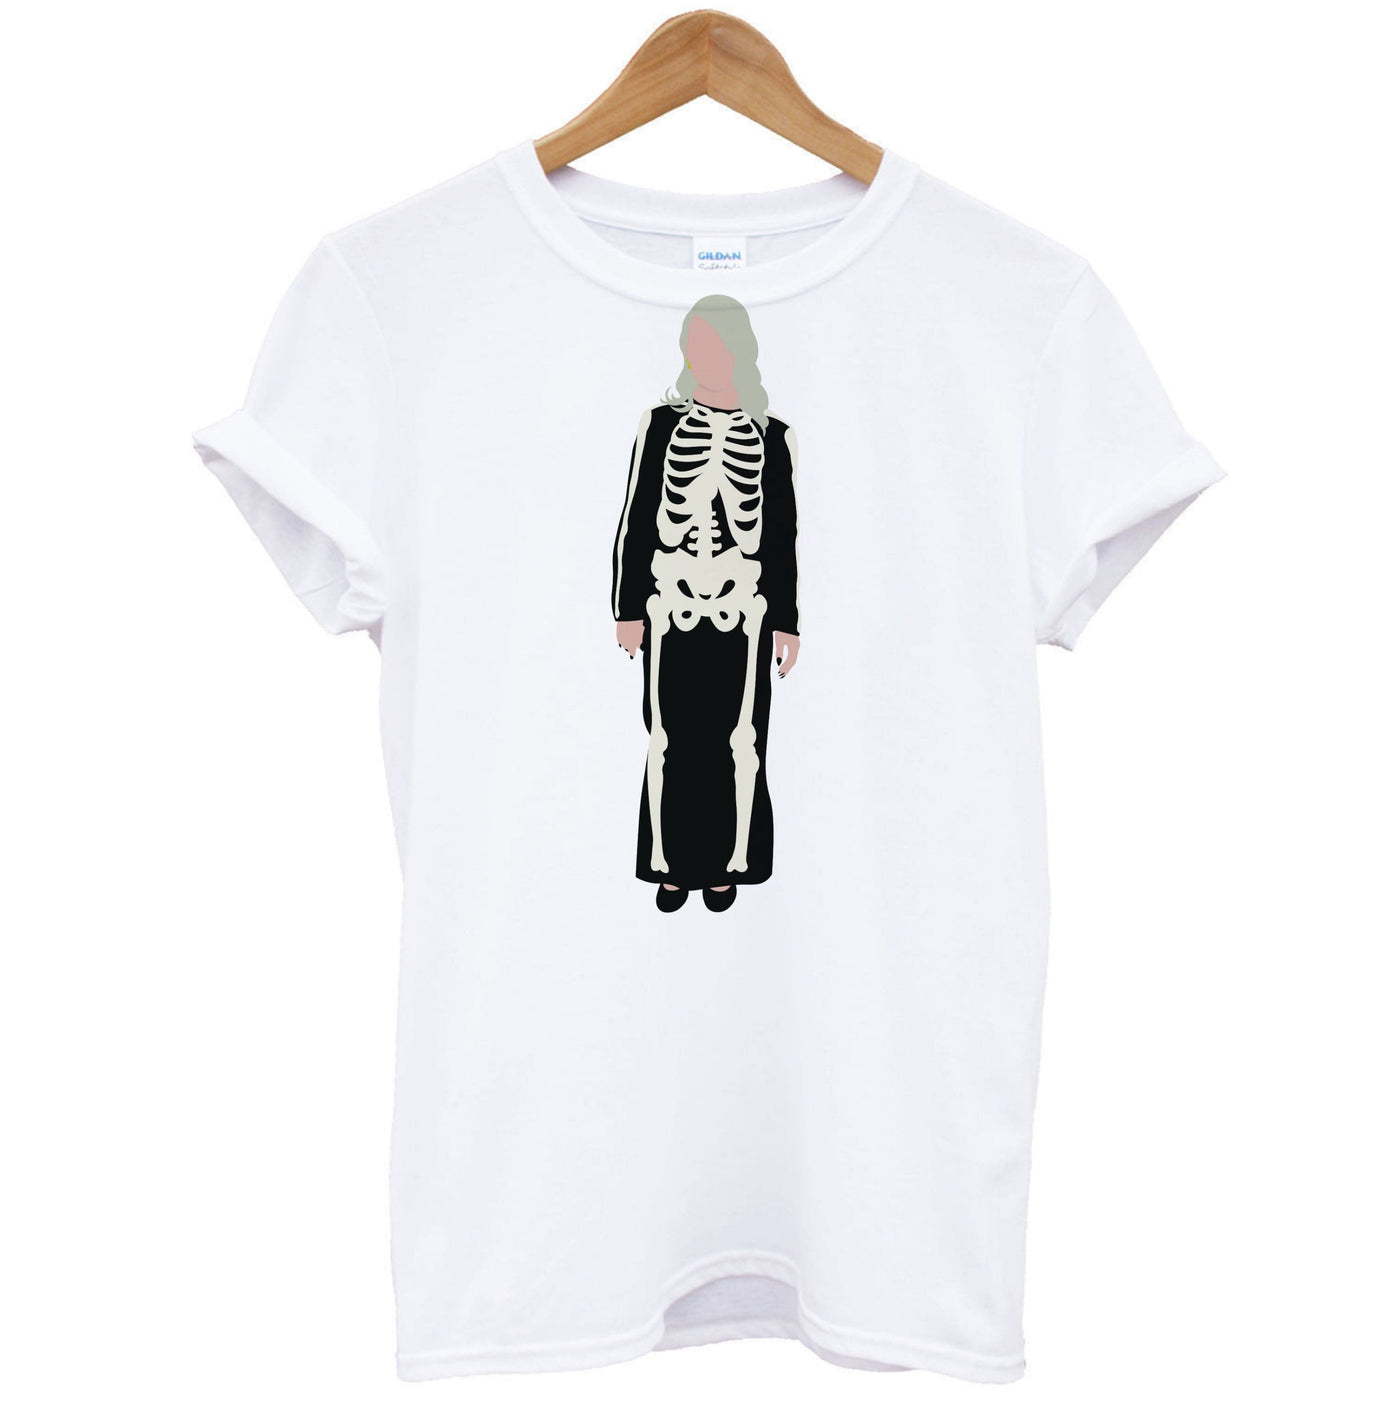 Skeleton - Phoebe Bridgers T-Shirt